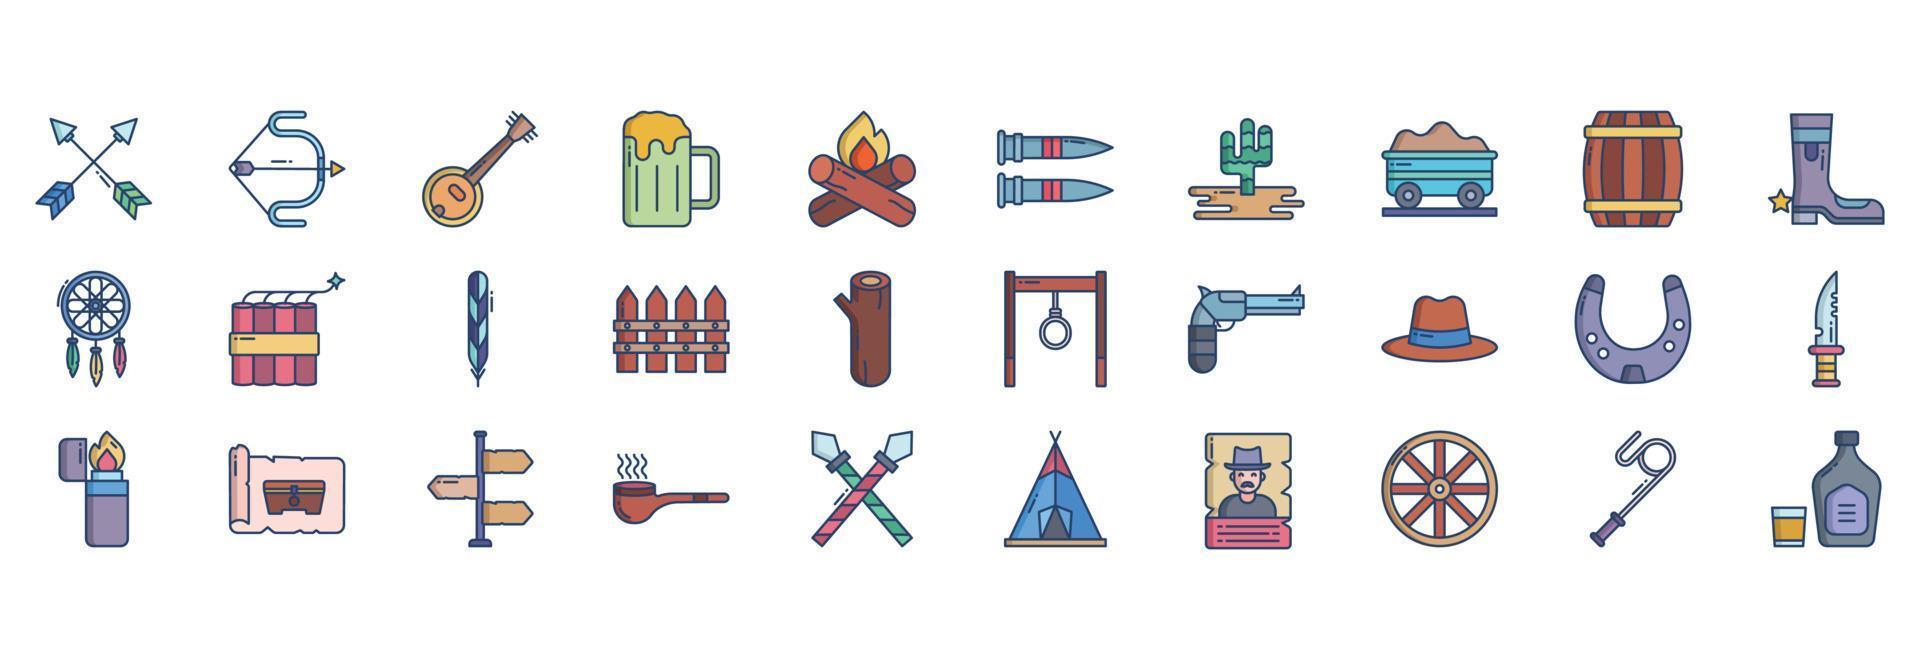 samling av ikoner relaterad till cowboy och vild väster, Inklusive ikoner tycka om pil, banjo, öl, bål och Mer. vektor illustrationer, pixel perfekt uppsättning